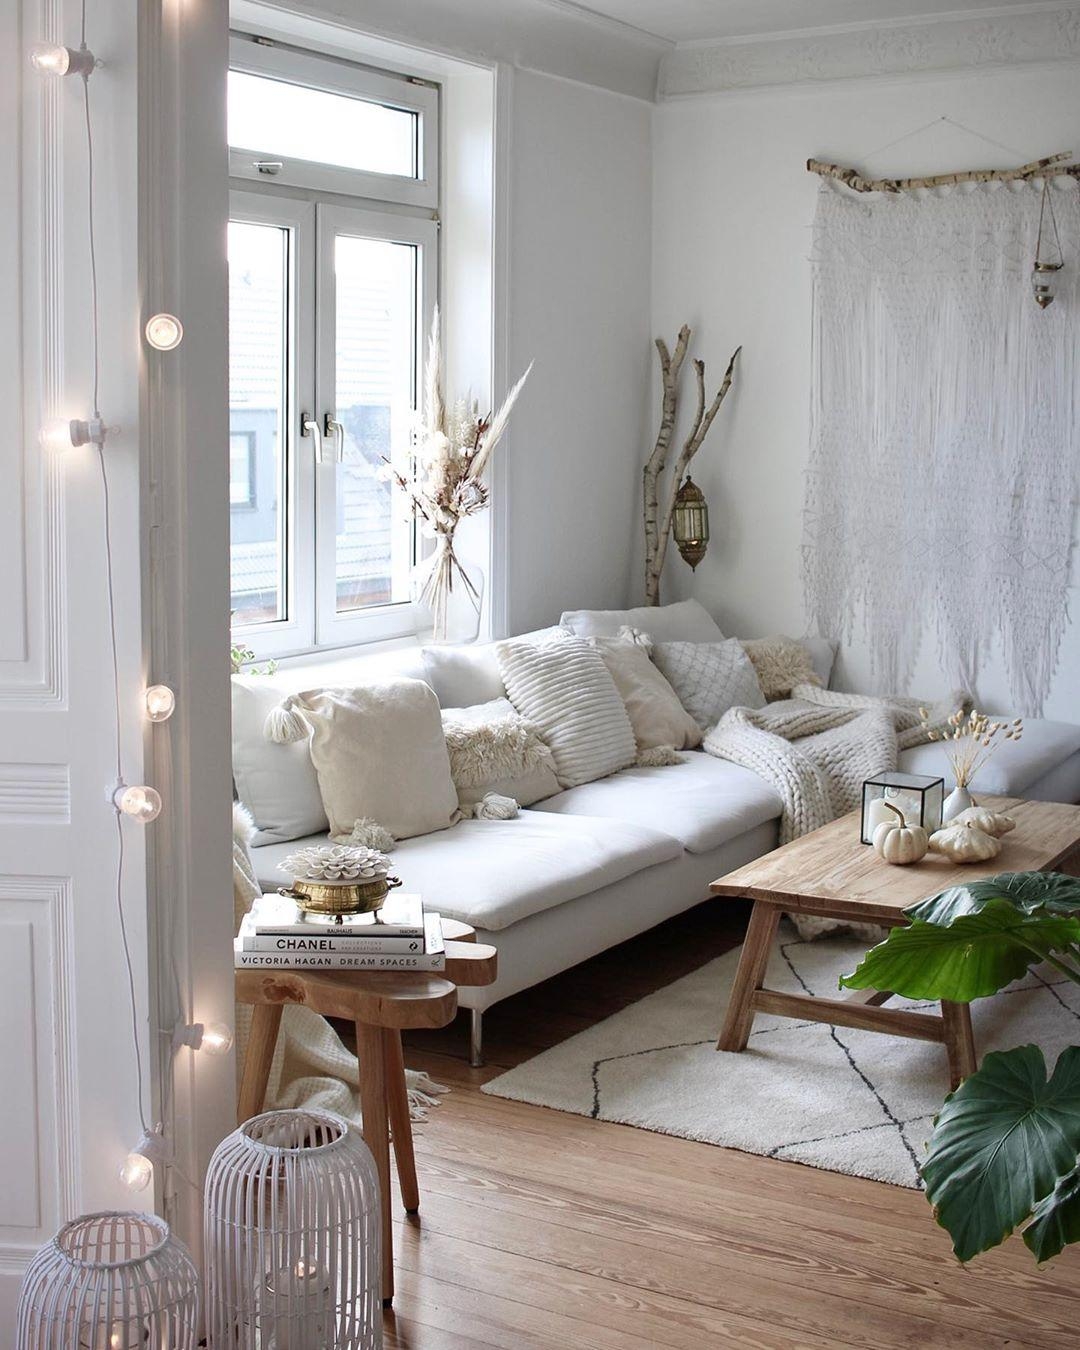 #Cozy #mood im #Wohnzimmer✨

#wohnzimmergestaltung #wohnen #home #ikea #weiss #couchtisch #couch #sofa #licht #kissen 